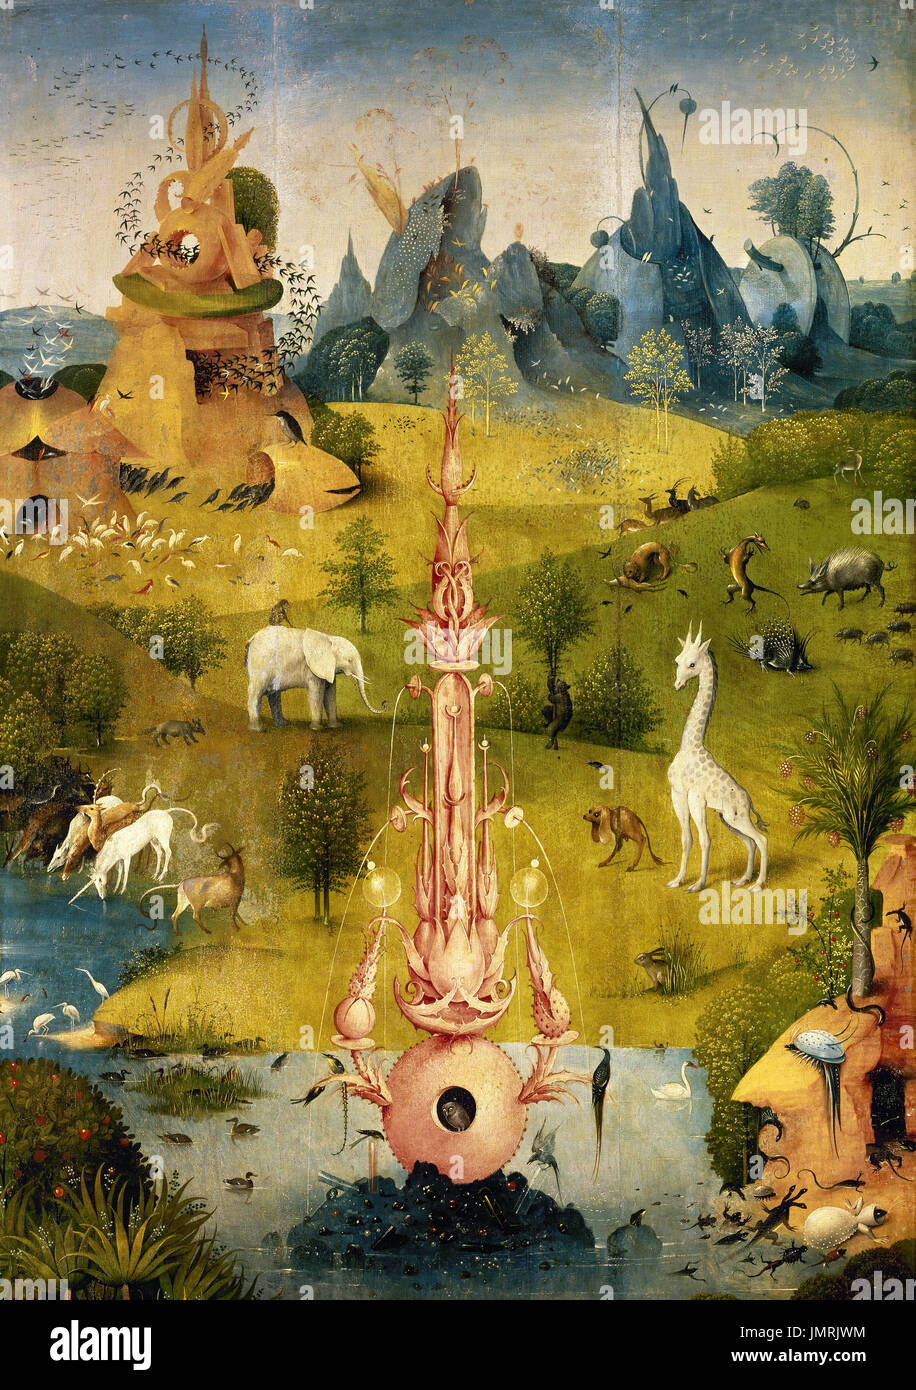 Jérôme Bosch (c.1450-1516). Peintre hollandais. Le Jardin des Délices, Triptyque, 1500-1505. Détail d'un panneau de gauche. Musée du Prado. Madrid. L'Espagne. Banque D'Images